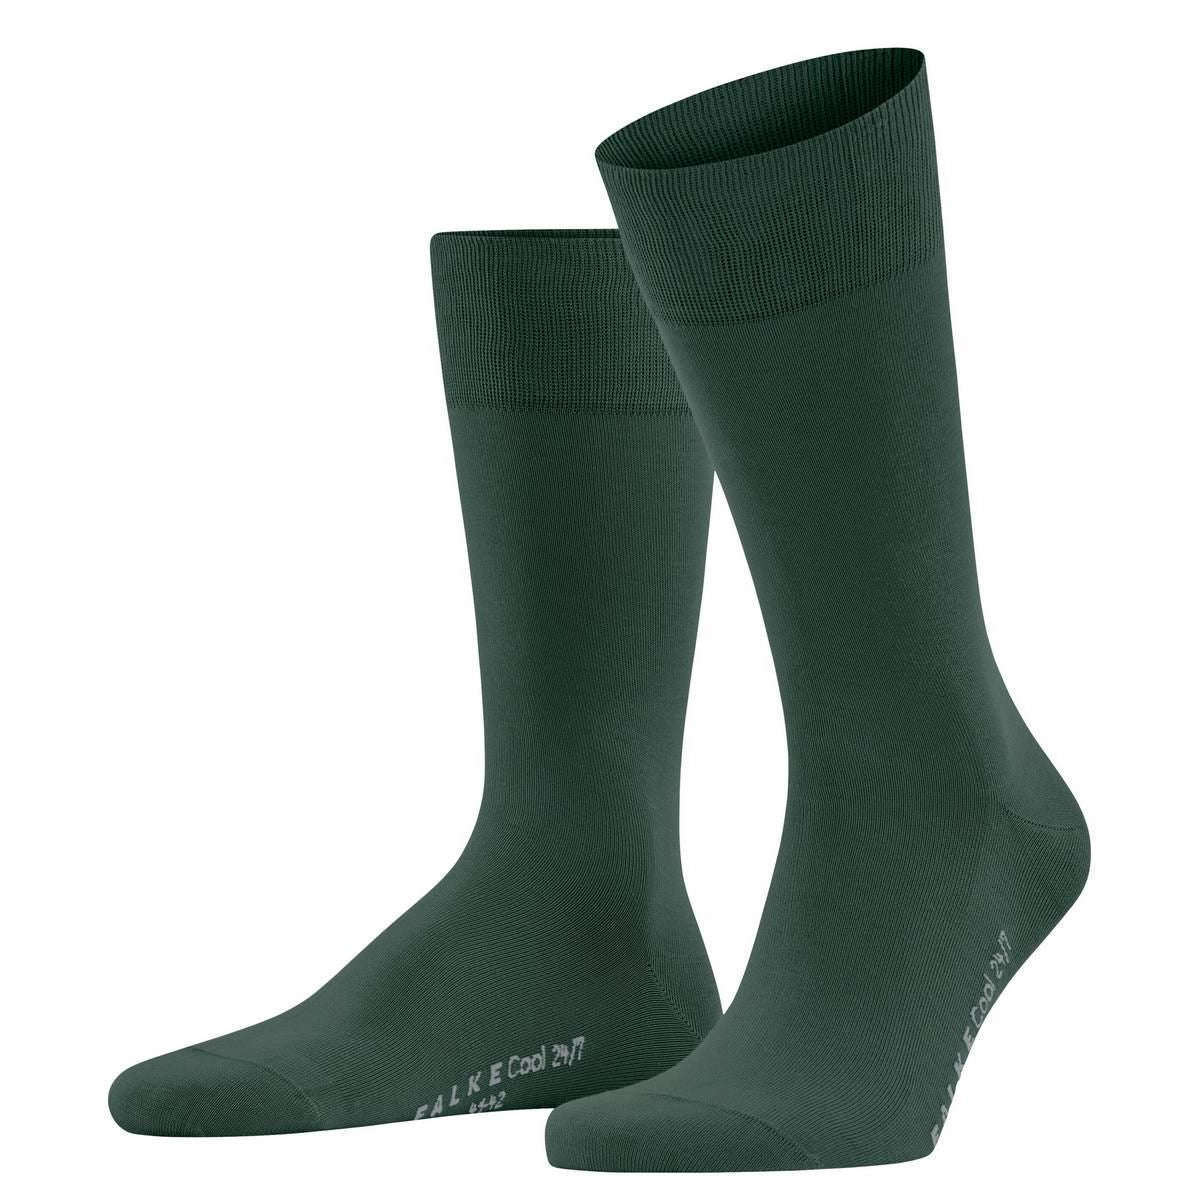 Falke Cool 24/7 Socks - Hunter Green - Medium - 8.5-9.5 UK | 9.5-10.5 US | 43-44 EUR